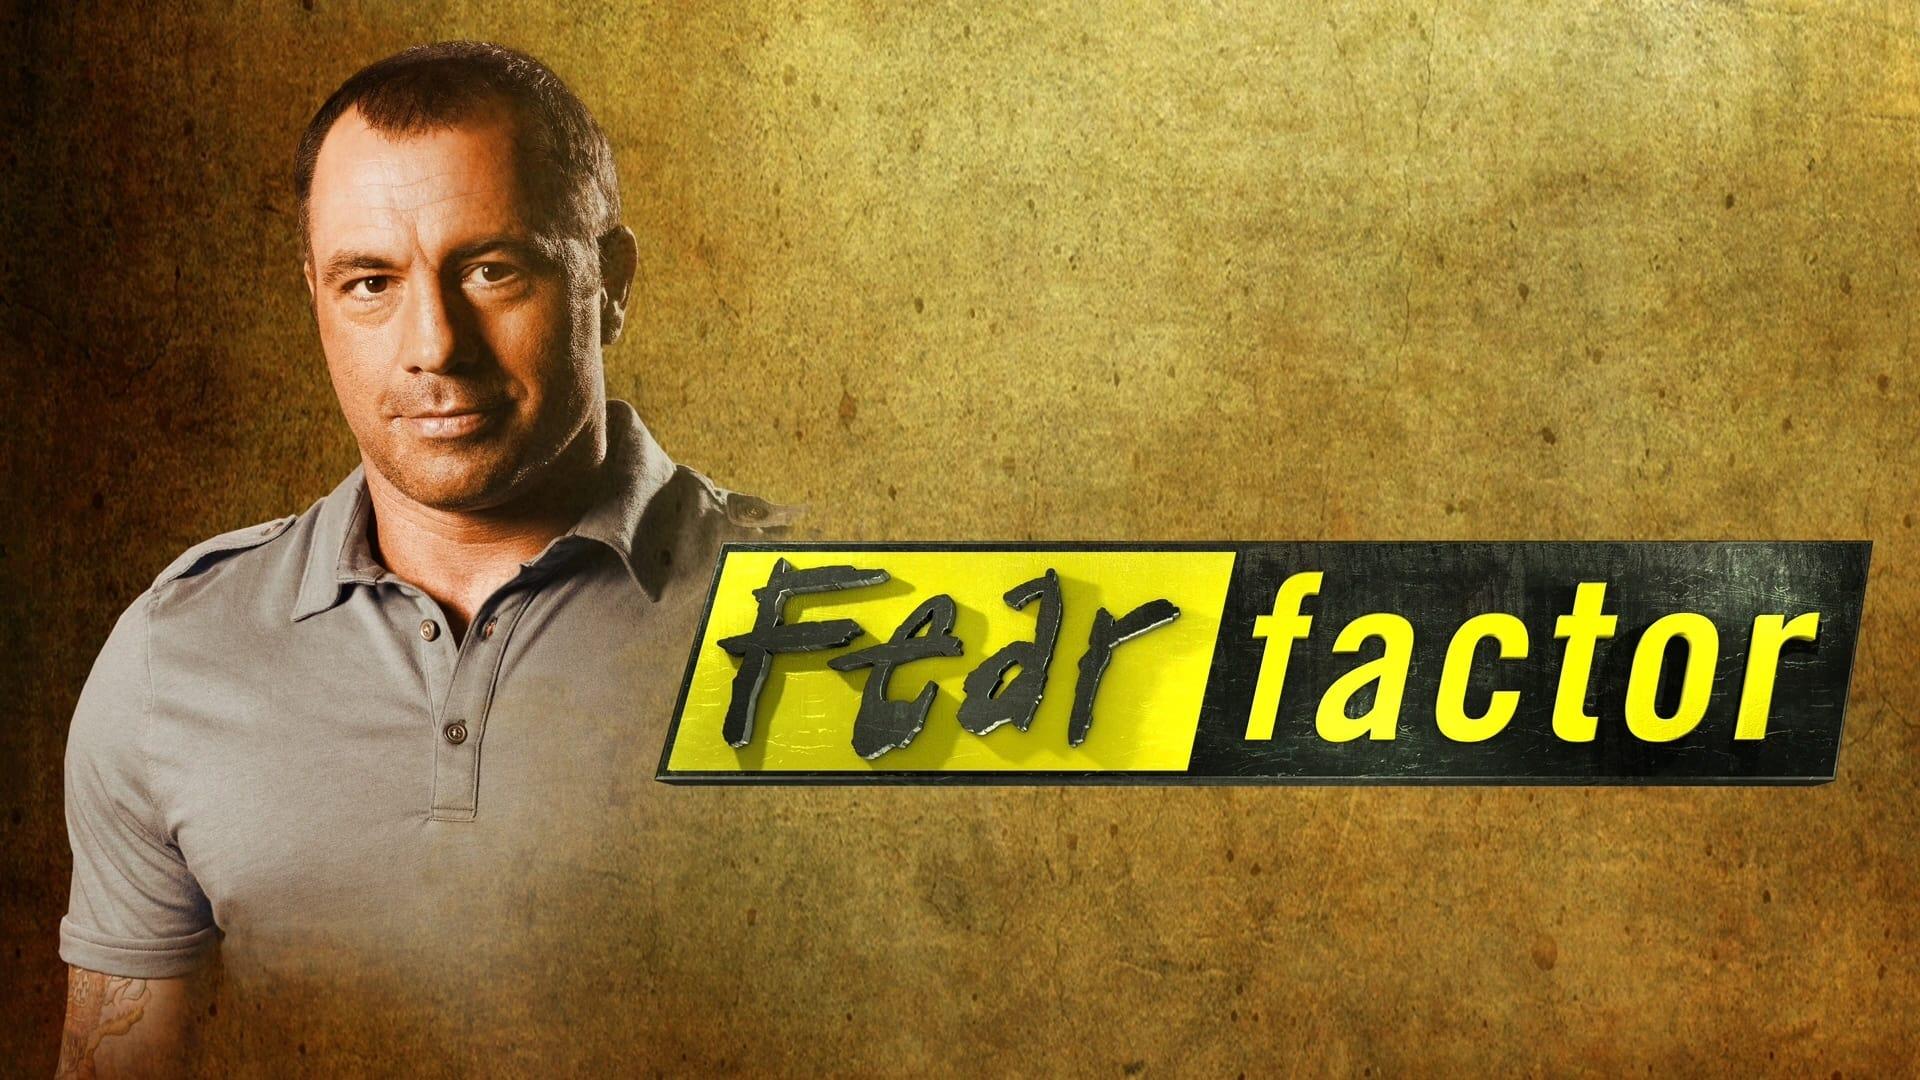 Fear Factor backdrop